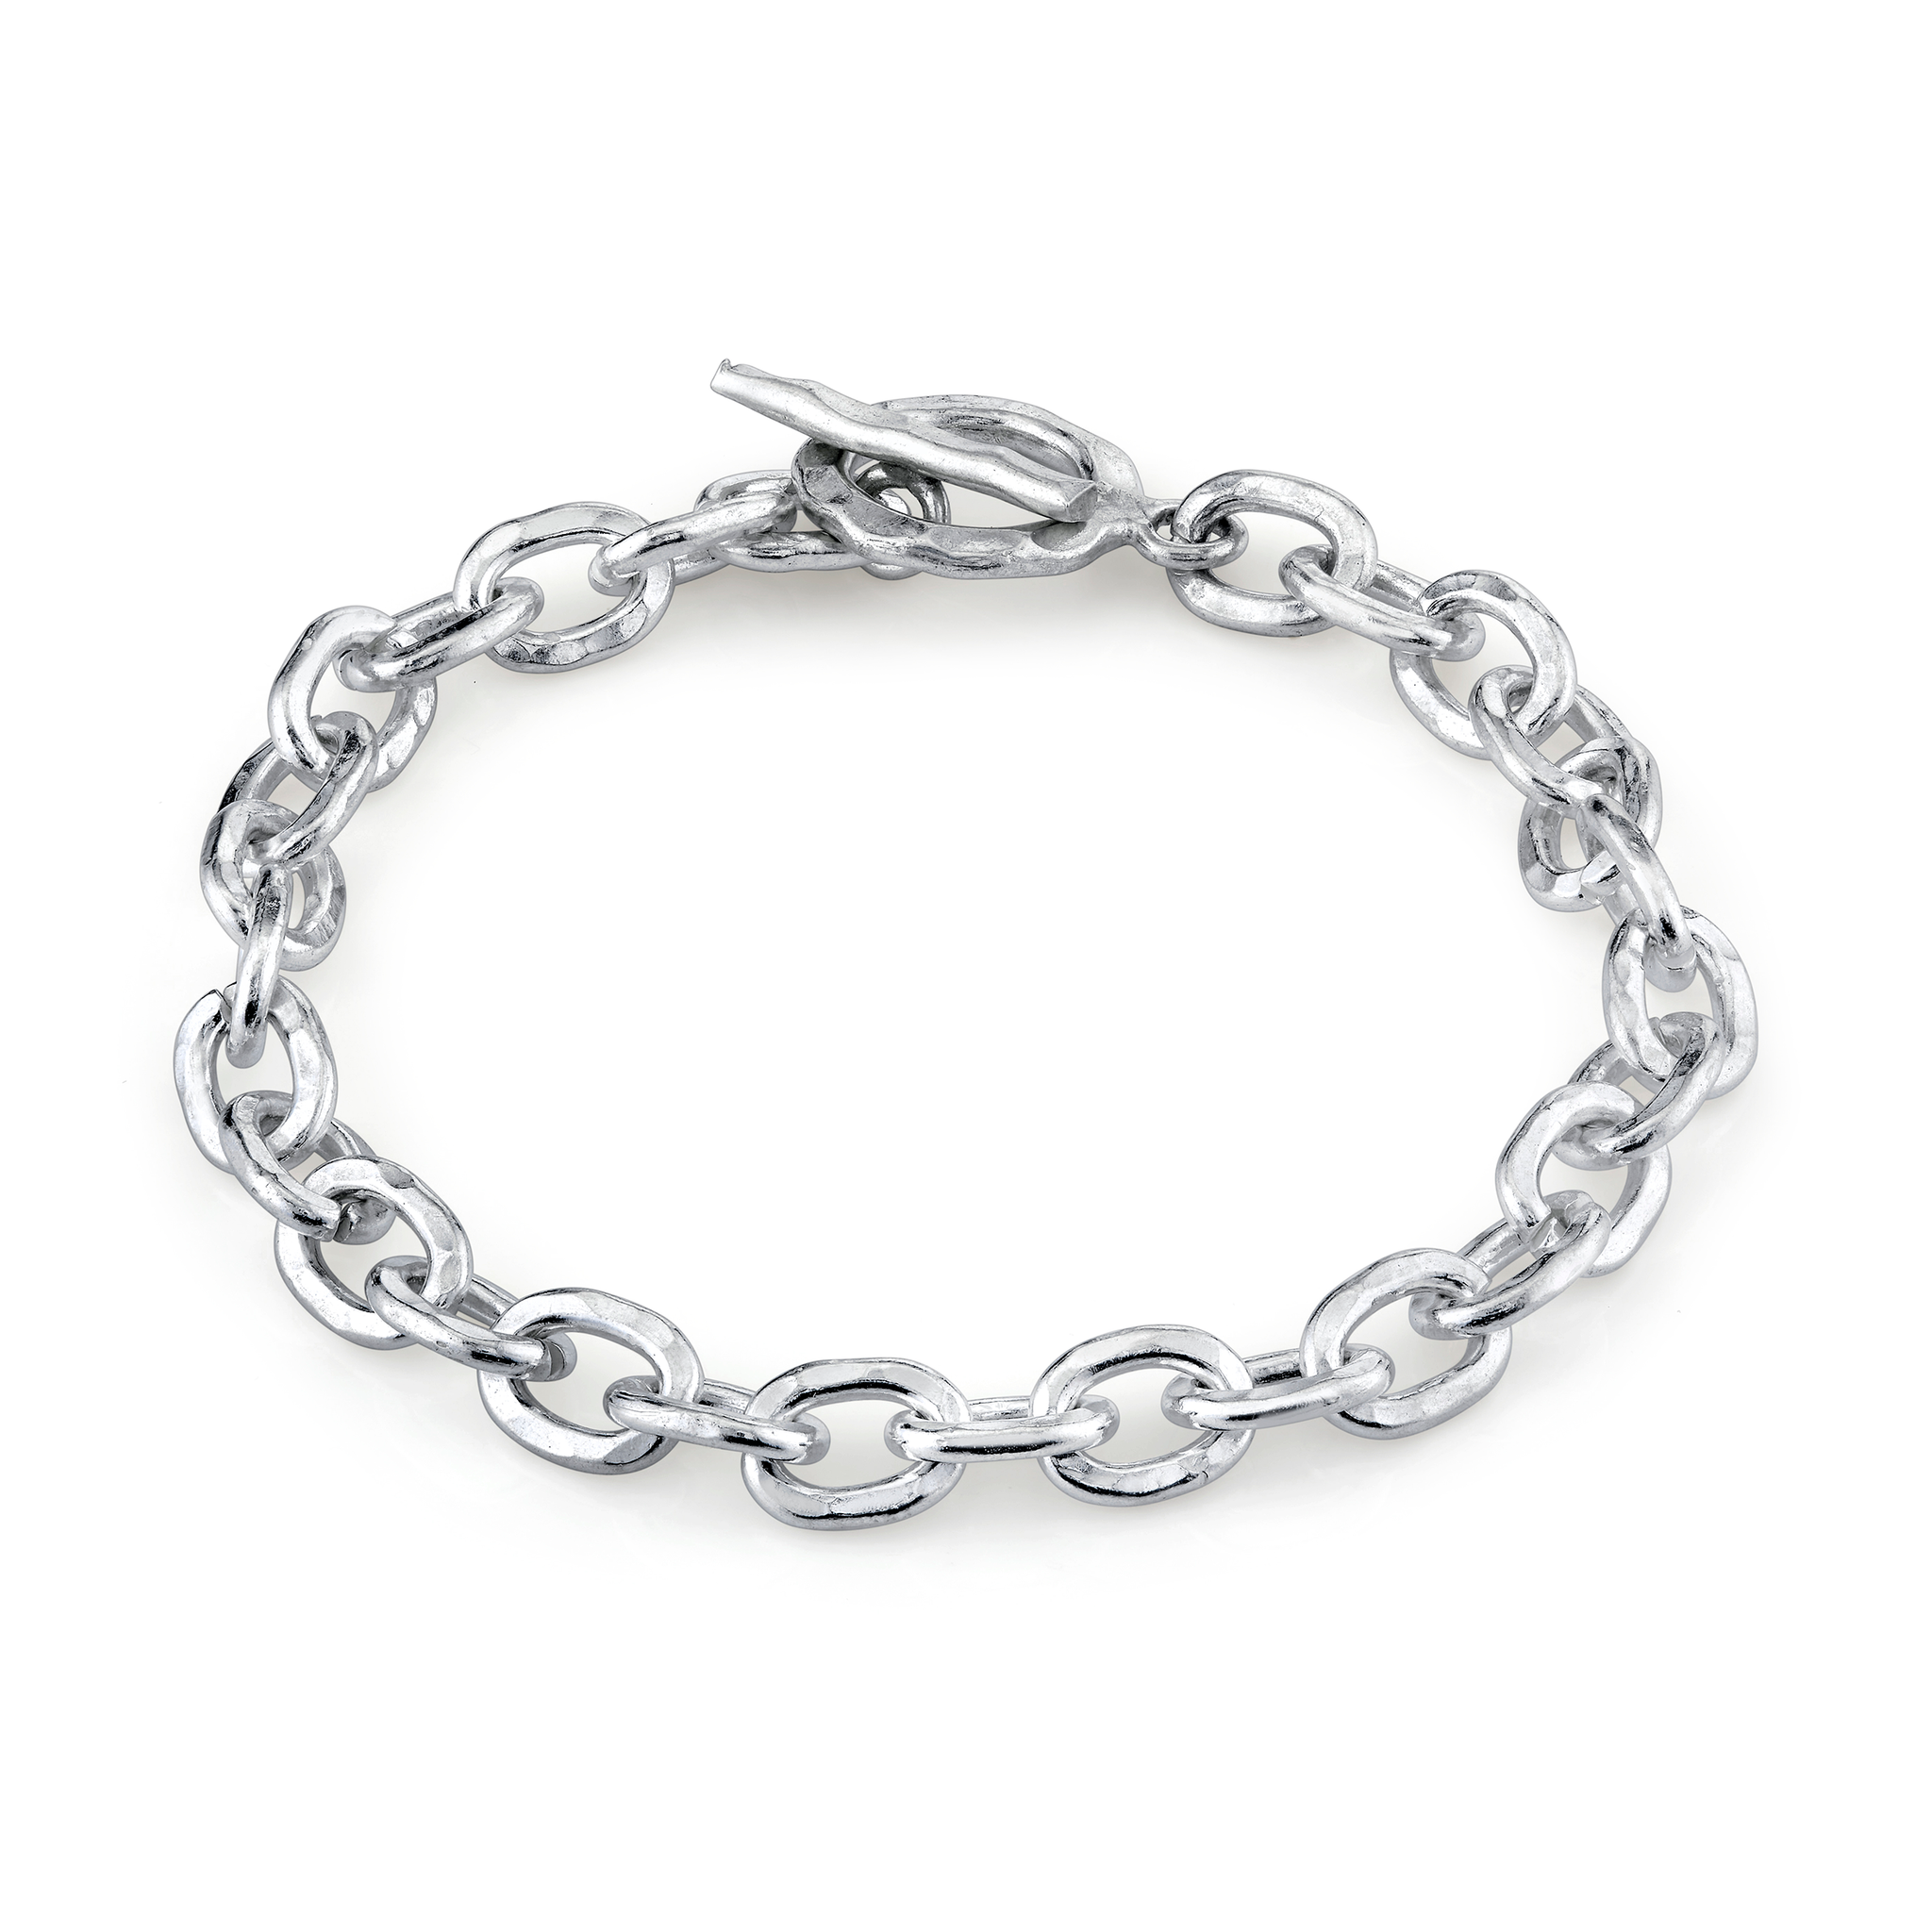 HOUSER | Silver Chain Bracelets for Women | Bangle Bracelets for Women ...